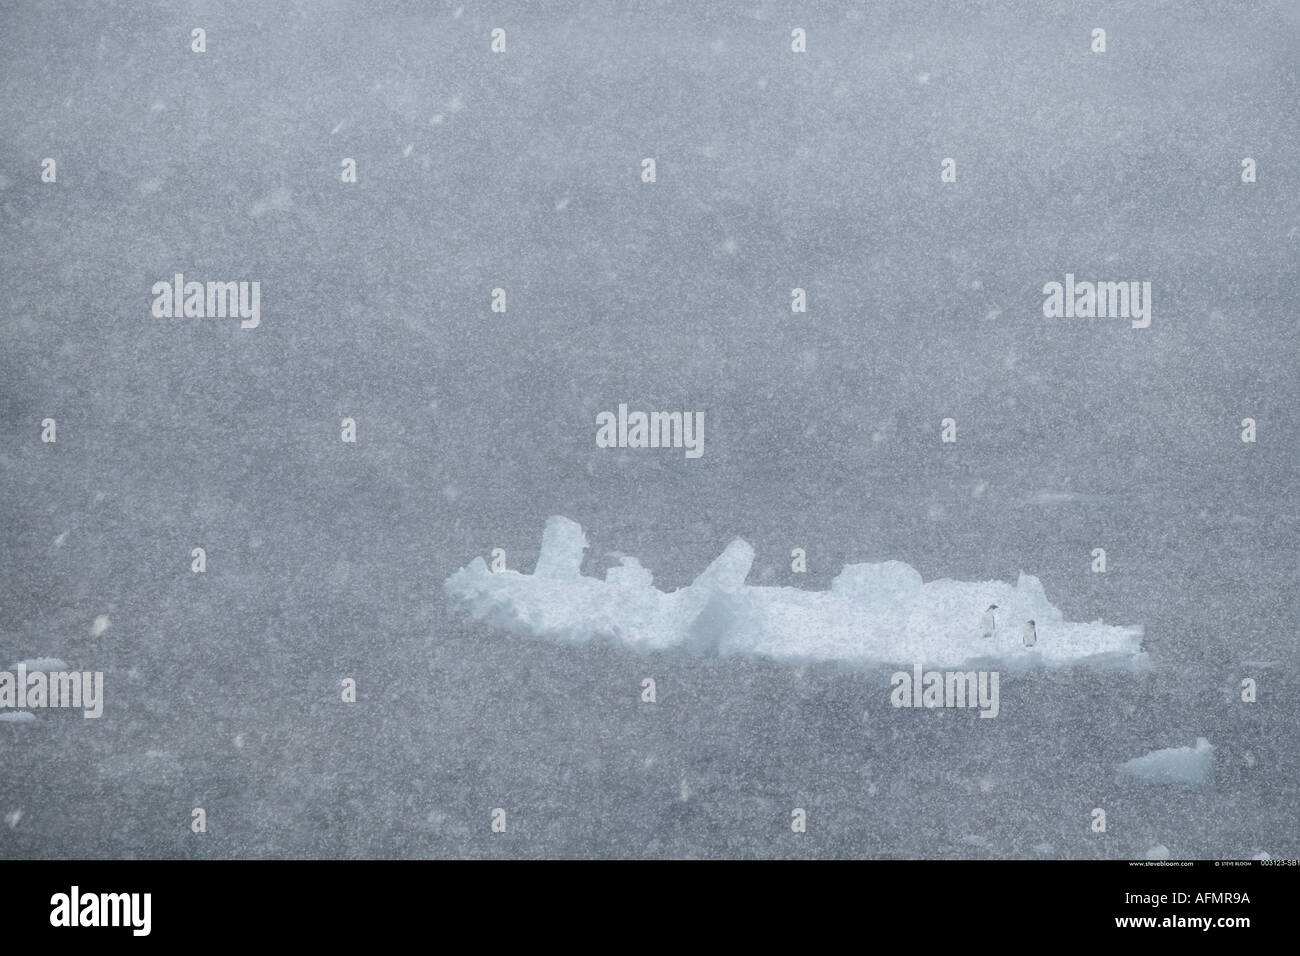 Deux manchots adélies sur un iceberg en Antarctique un blizzard Banque D'Images